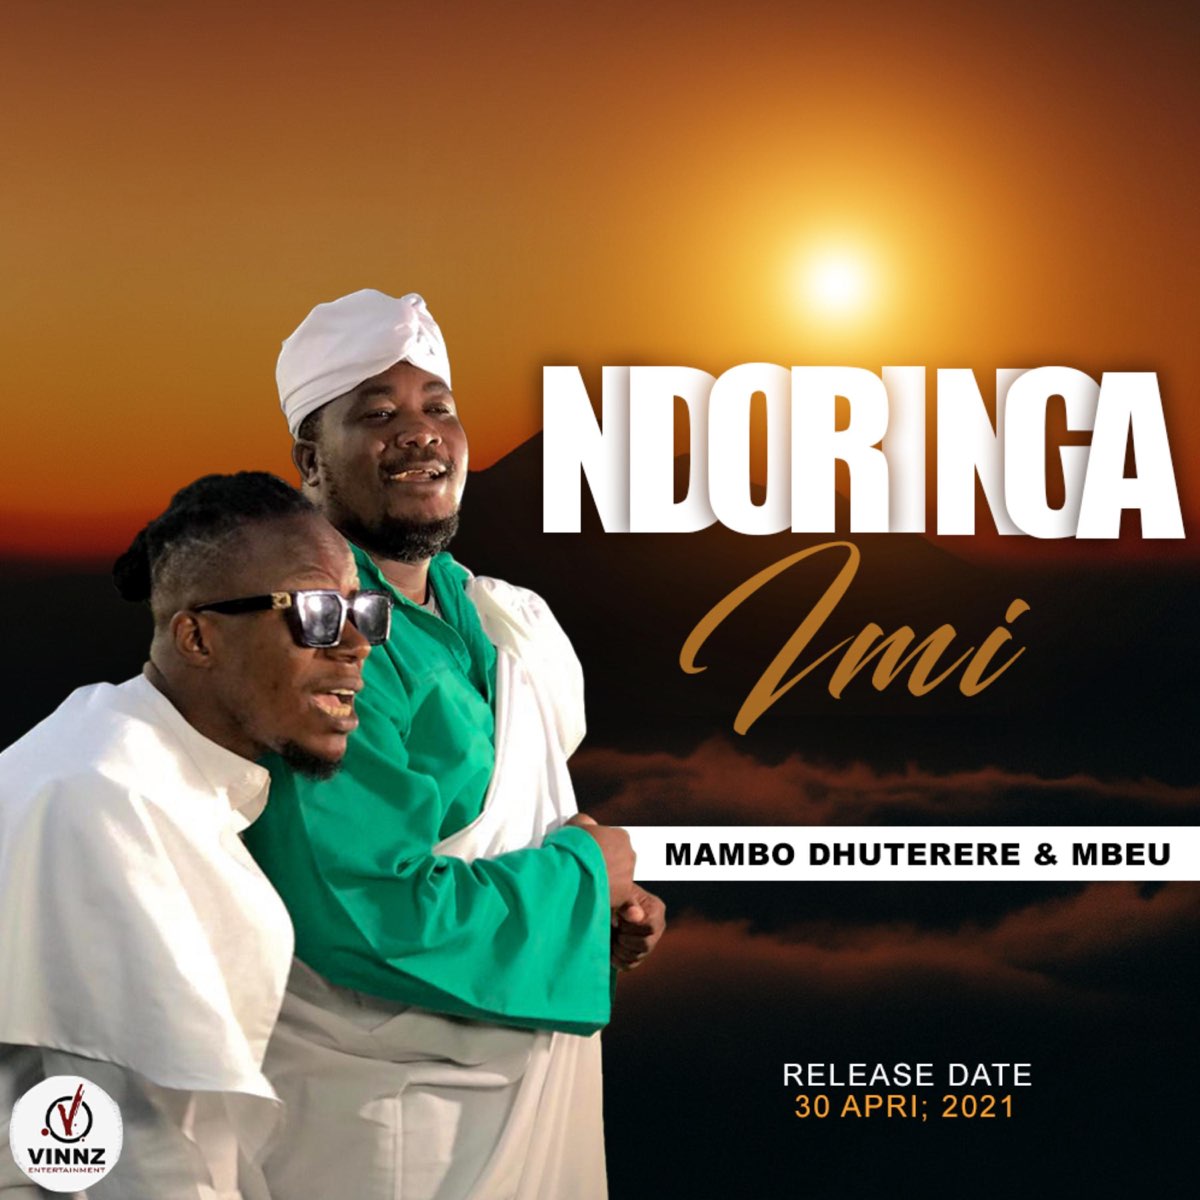 Ndoringa Imi (feat. Mbeu) - Single by Mambo Dhuterere on Apple Music